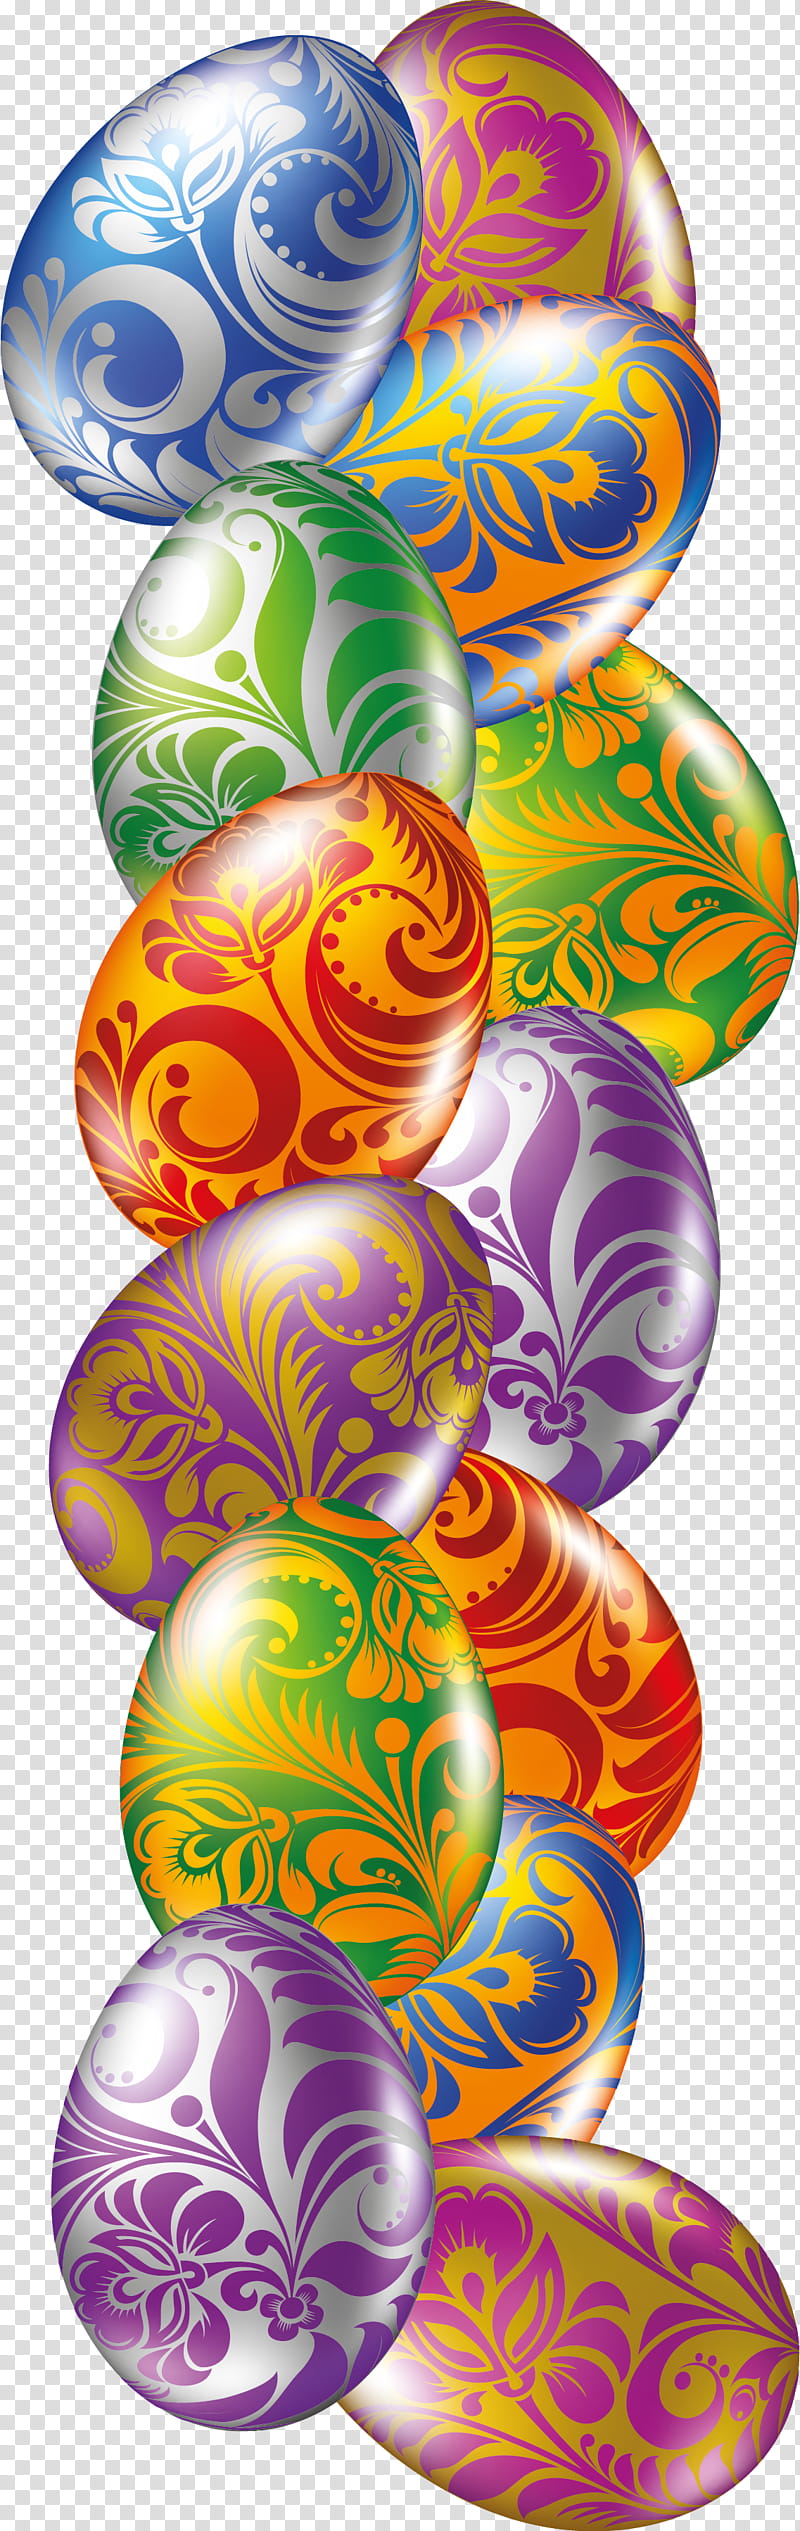 Easter Egg, Easter
, Easter Bunny, Easter Parade, Egg Hunt, Fractal Art, Orange, Ornament transparent background PNG clipart